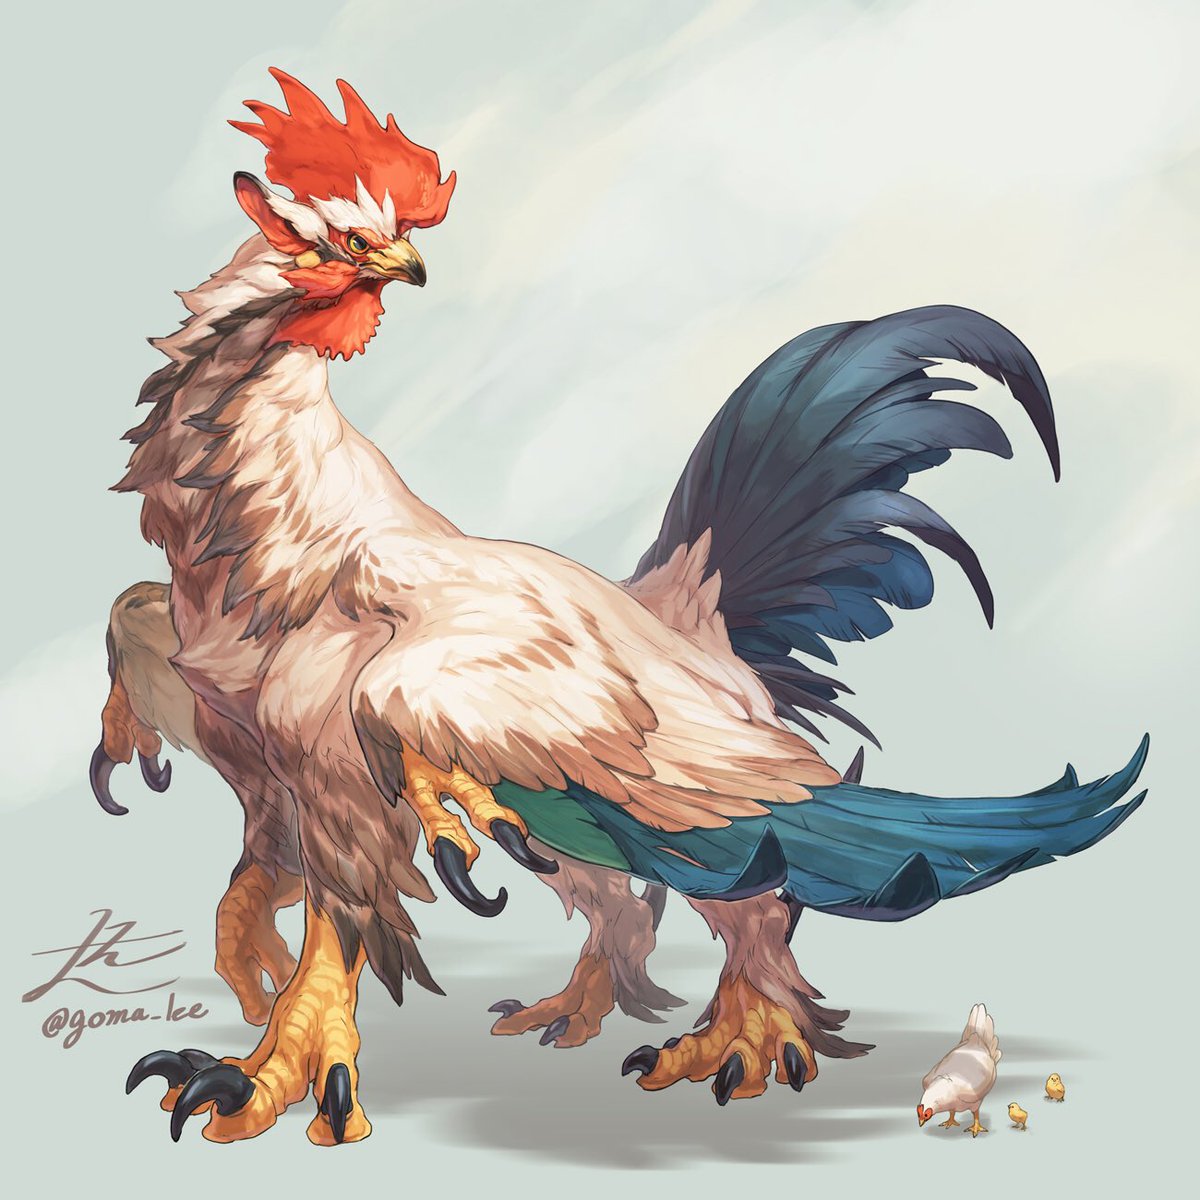 「Chicken  Griffin?

#gomalemo_work 
https」|山村れぇ/Lē Yamamuraのイラスト